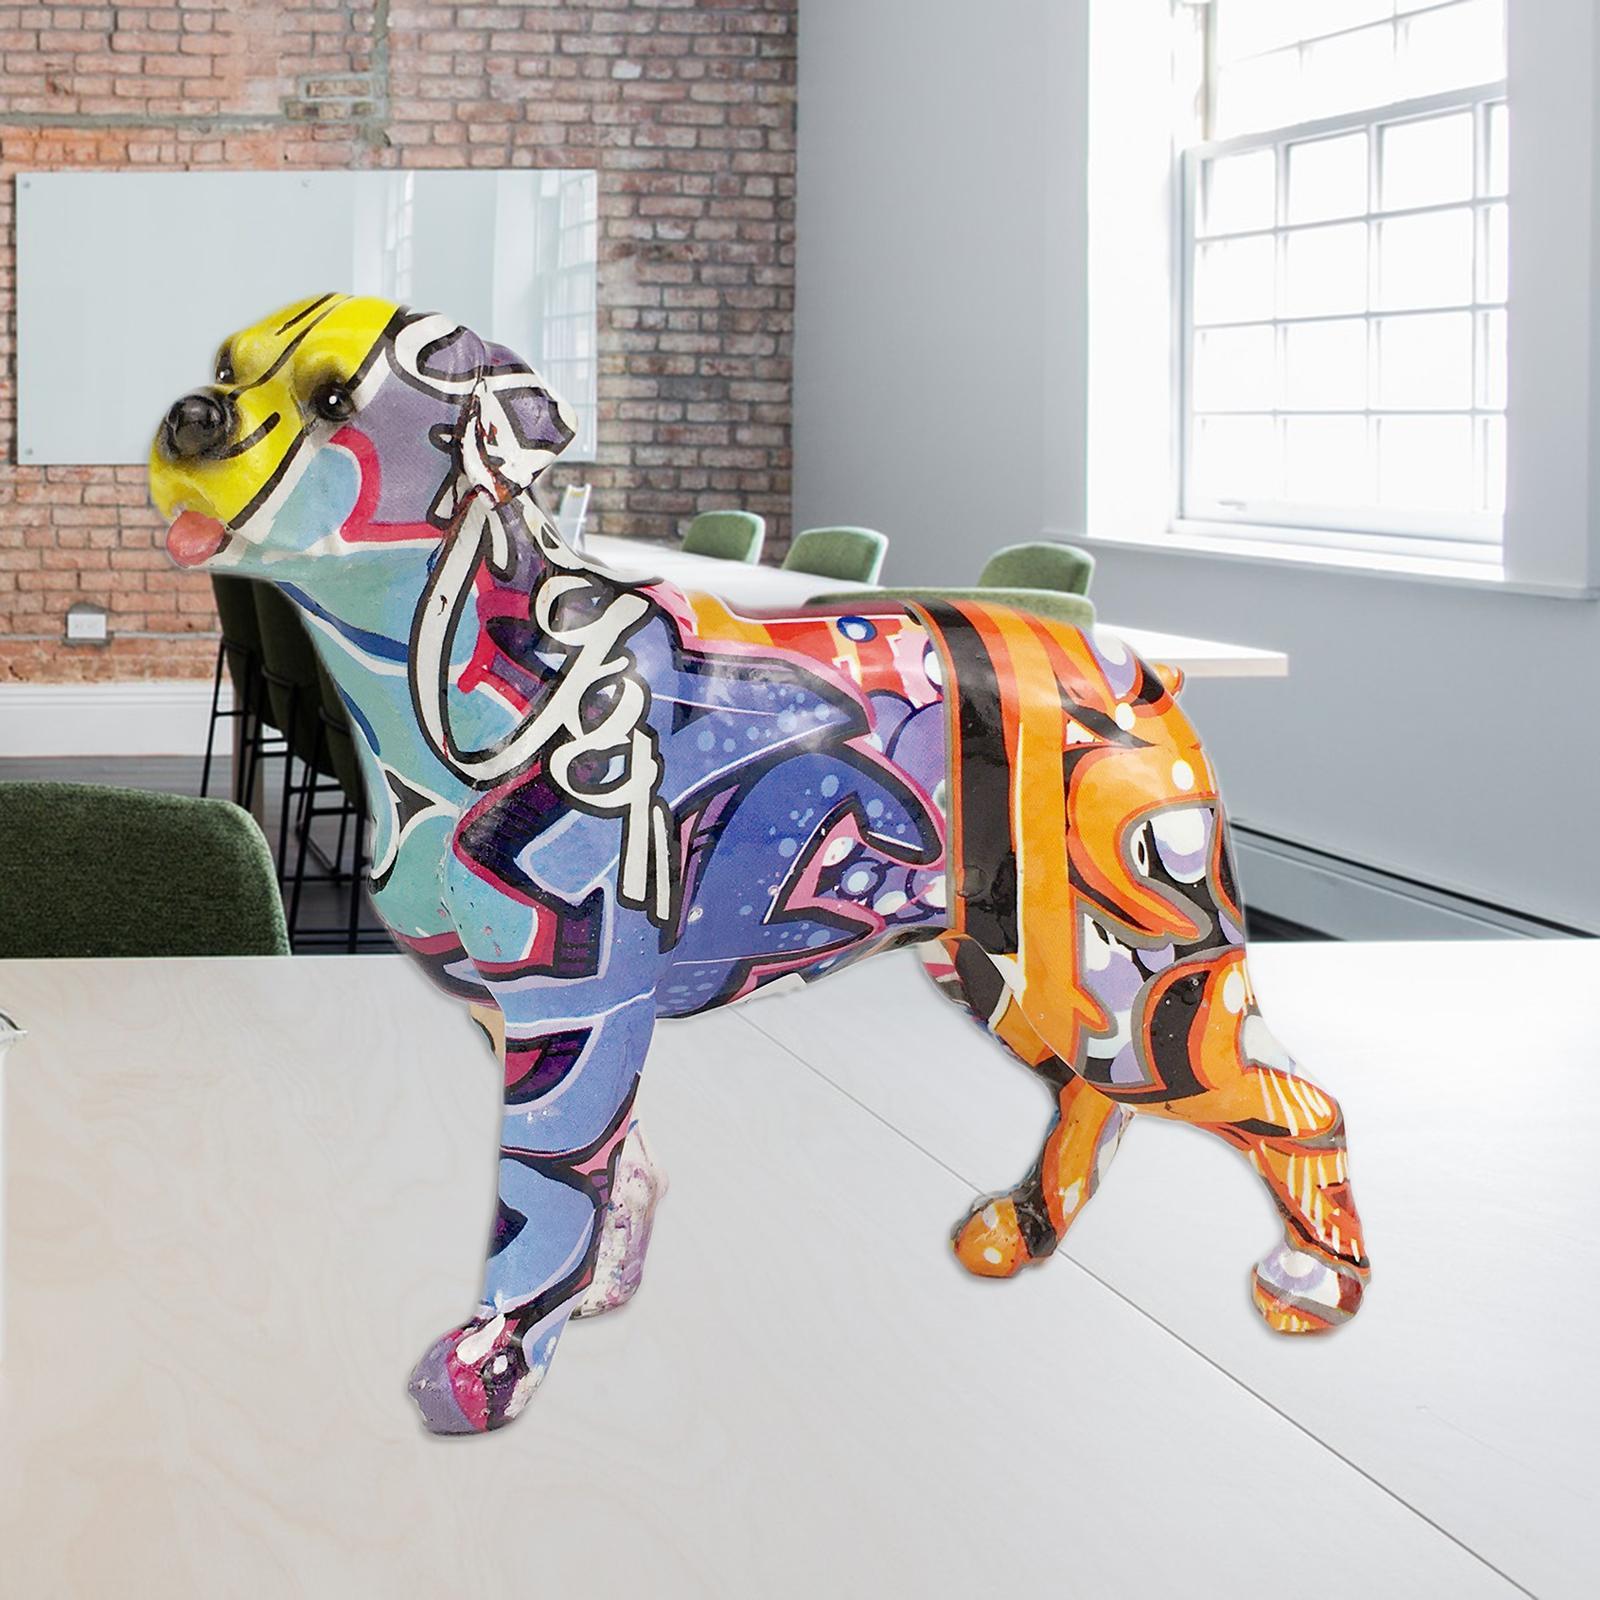 2pcs Creative Resin Dog Statue Figurine Bedroom Office Desktop Decor Crafts